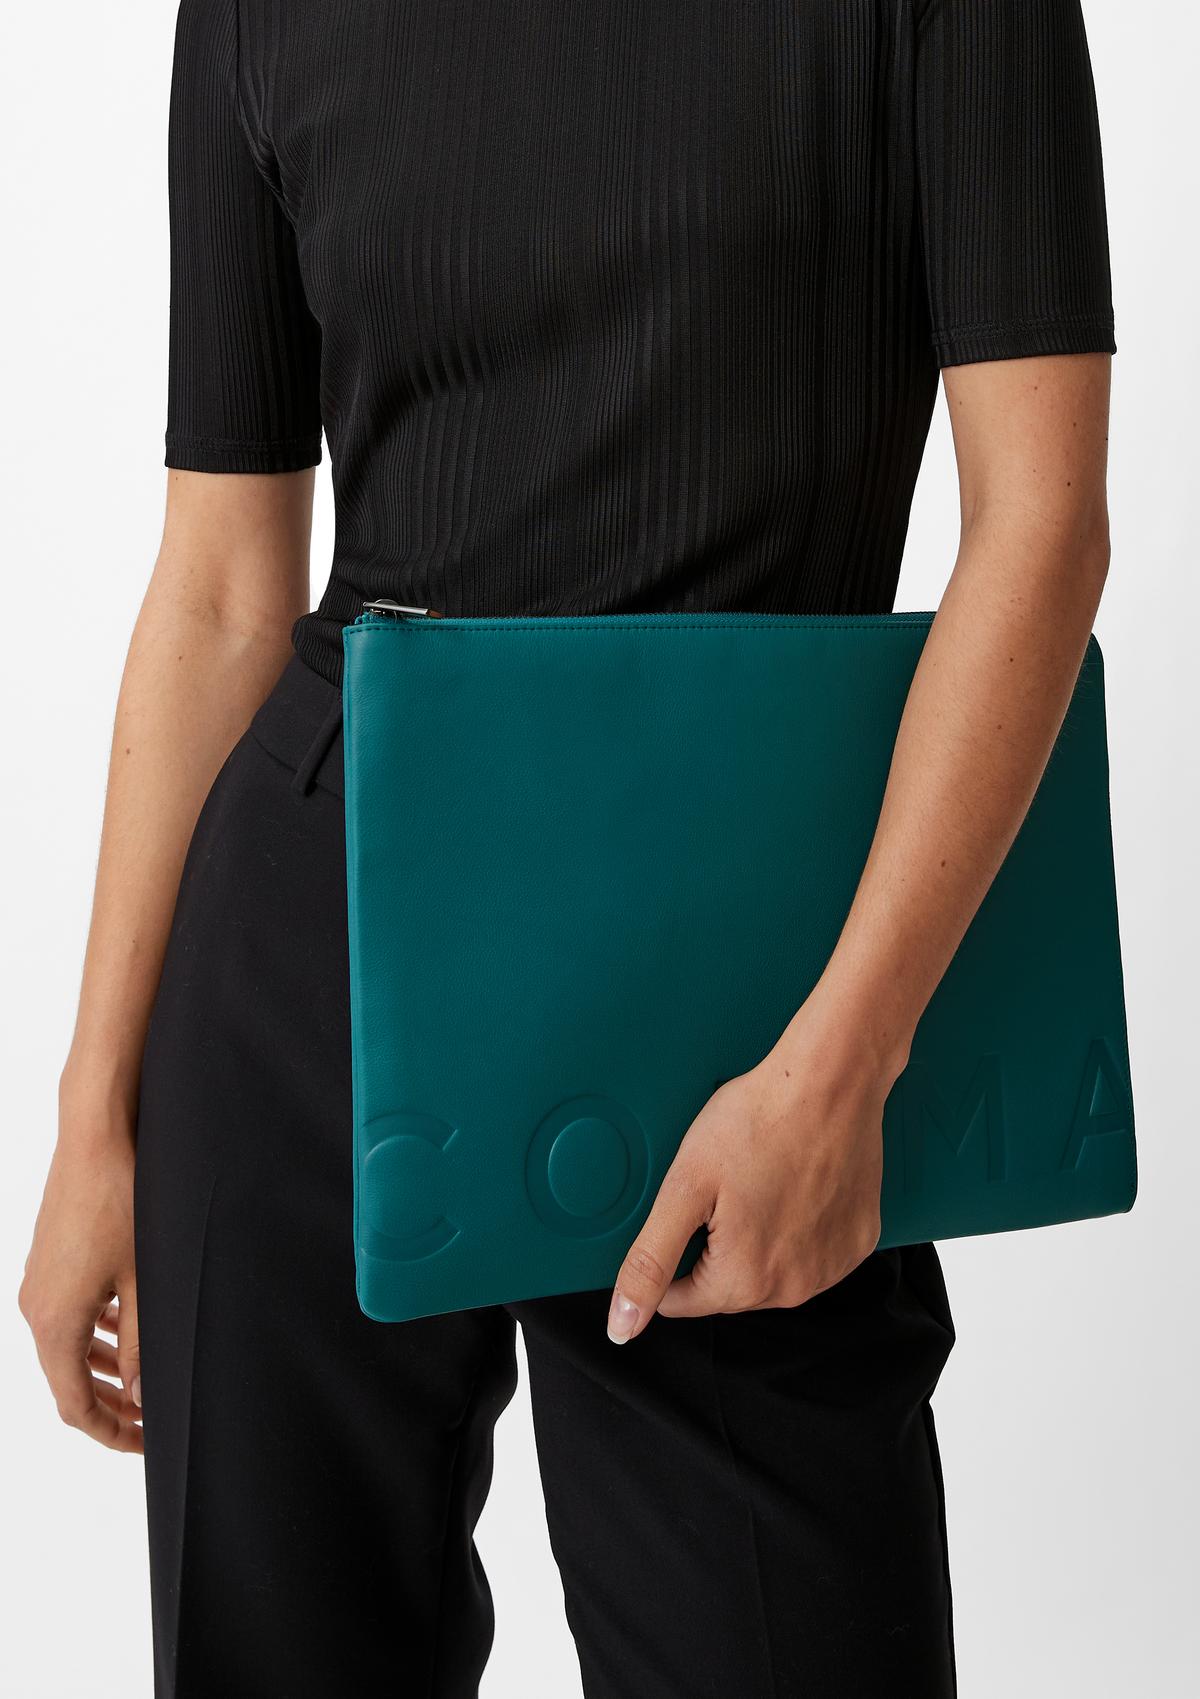 comma Hochwertige Laptop-Tasche aus Leder